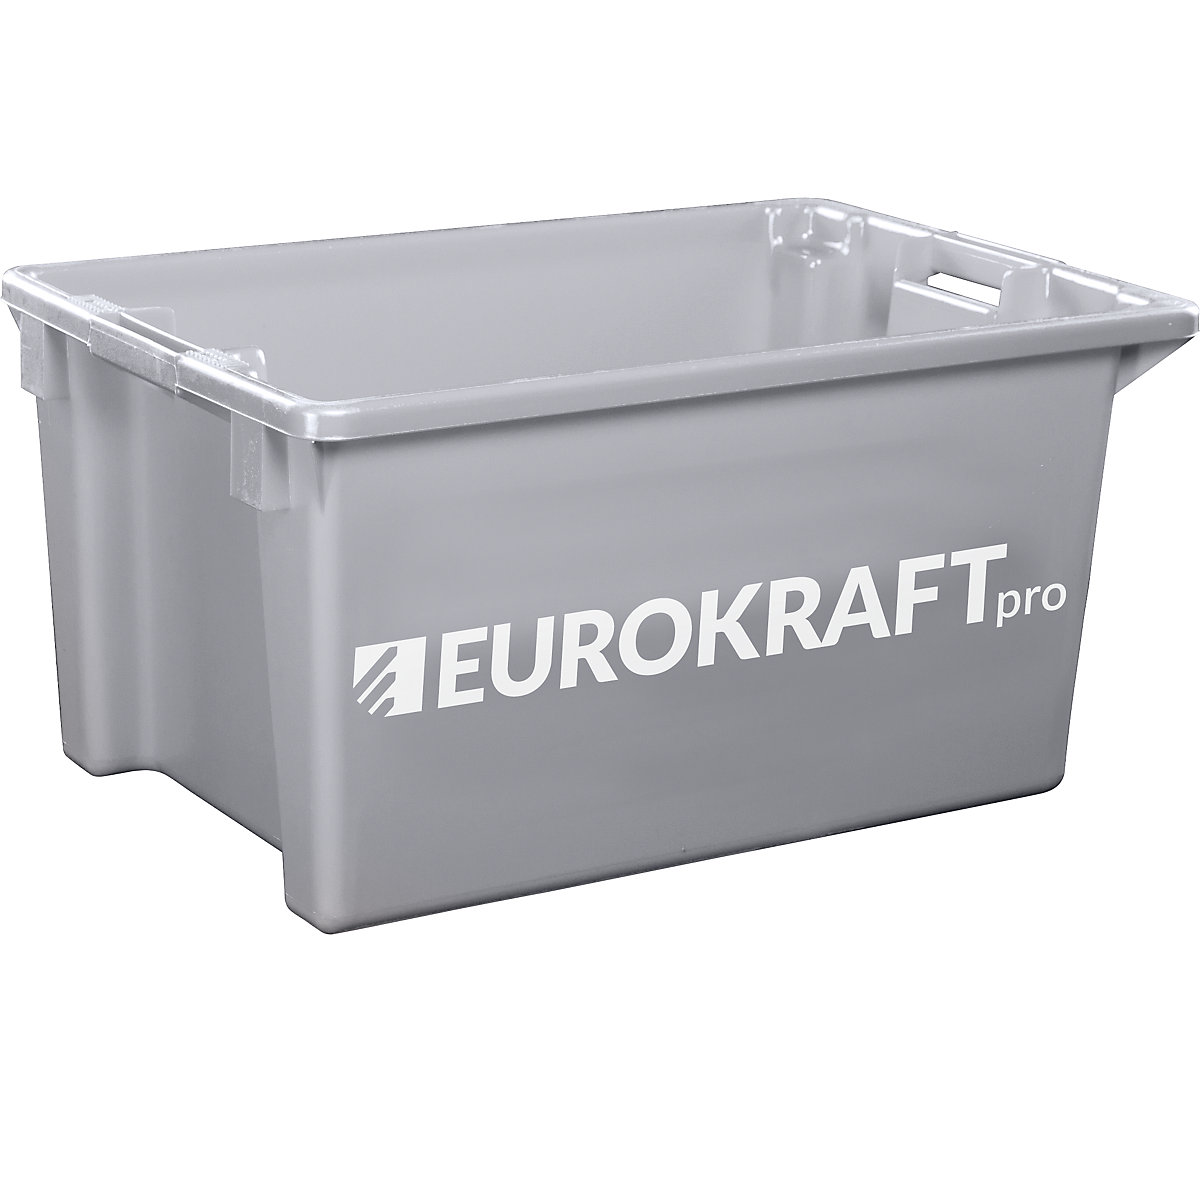 EUROKRAFTpro – Obrotowy pojemnik do ustawiania w stos z polipropylenu dopuszczonego do kontaktu z żywnością, poj. 70 l, opak. 2 szt., ścianki i dno zamknięte, szare